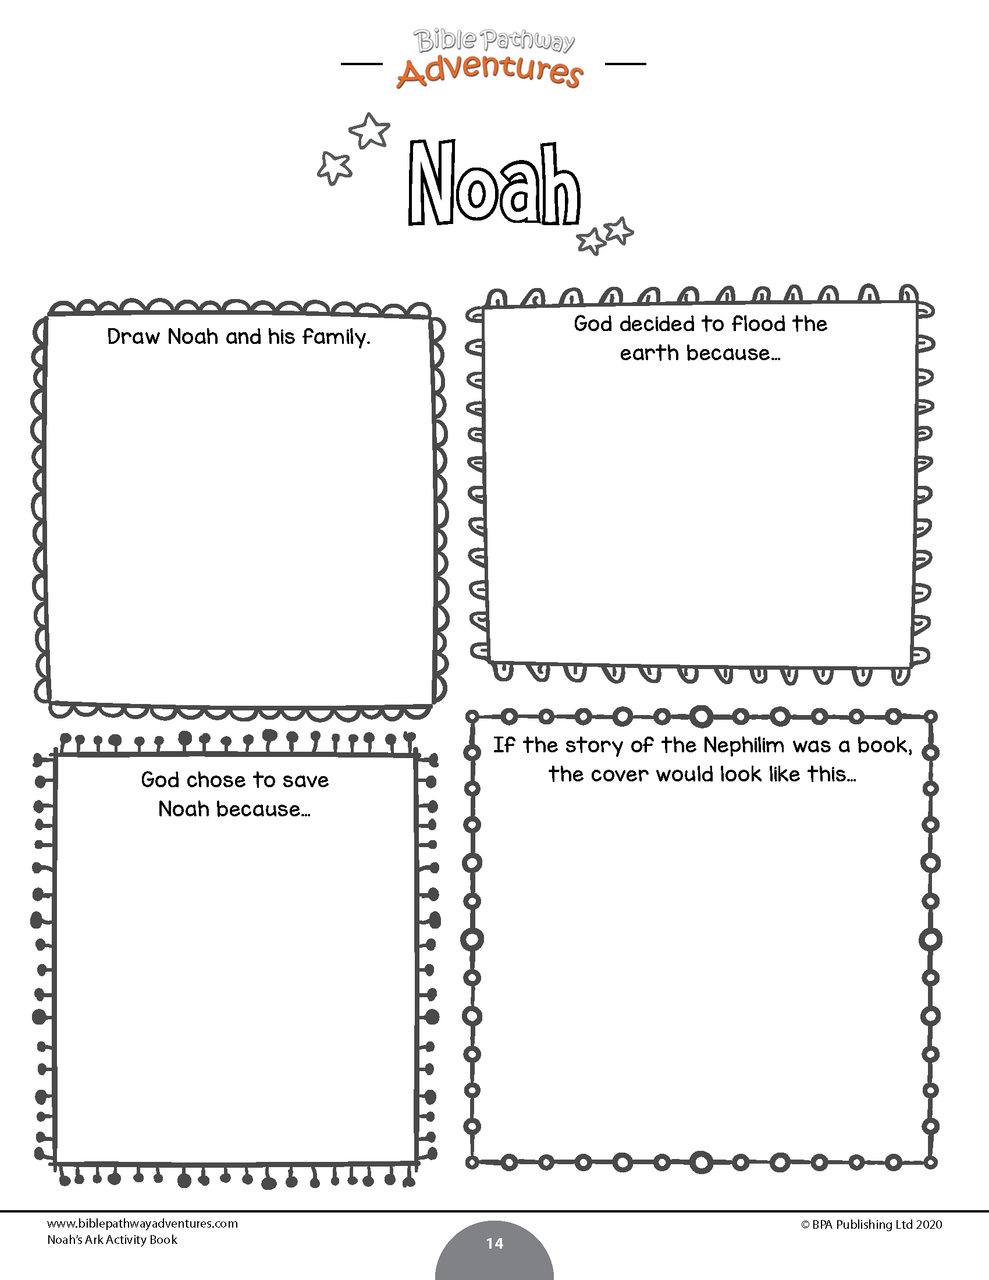 Noah's Ark Activity Book (kids ages 6-12)